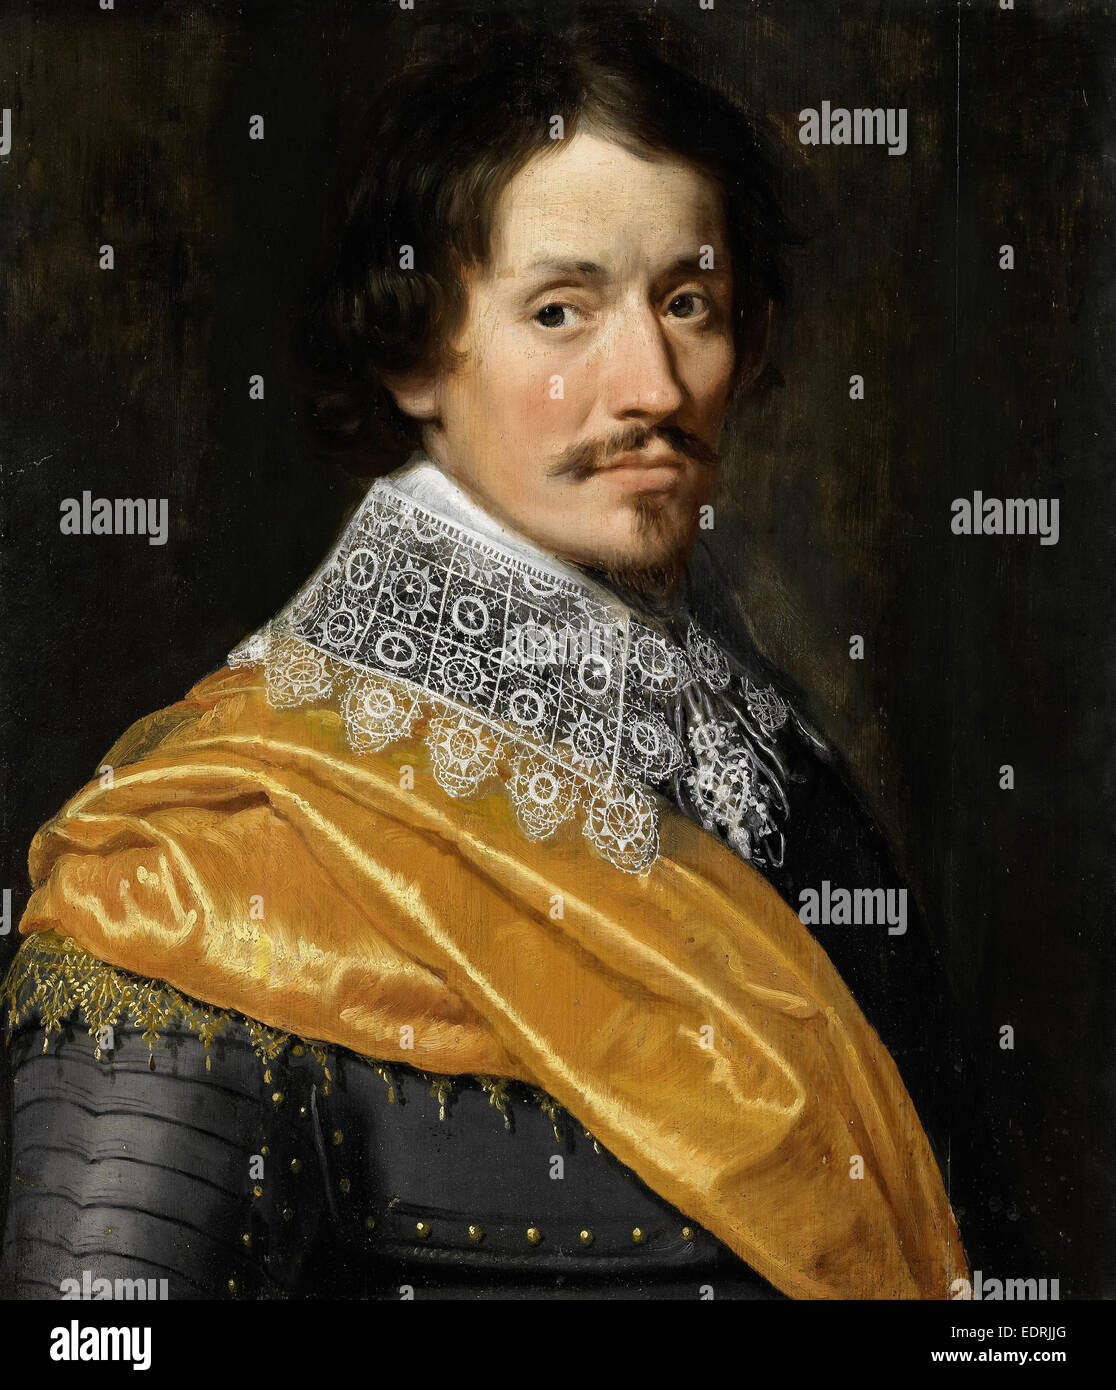 Ritratto di un Ufficiale, Wybrand de Geest, c. 1625 - c. 1635 Foto Stock